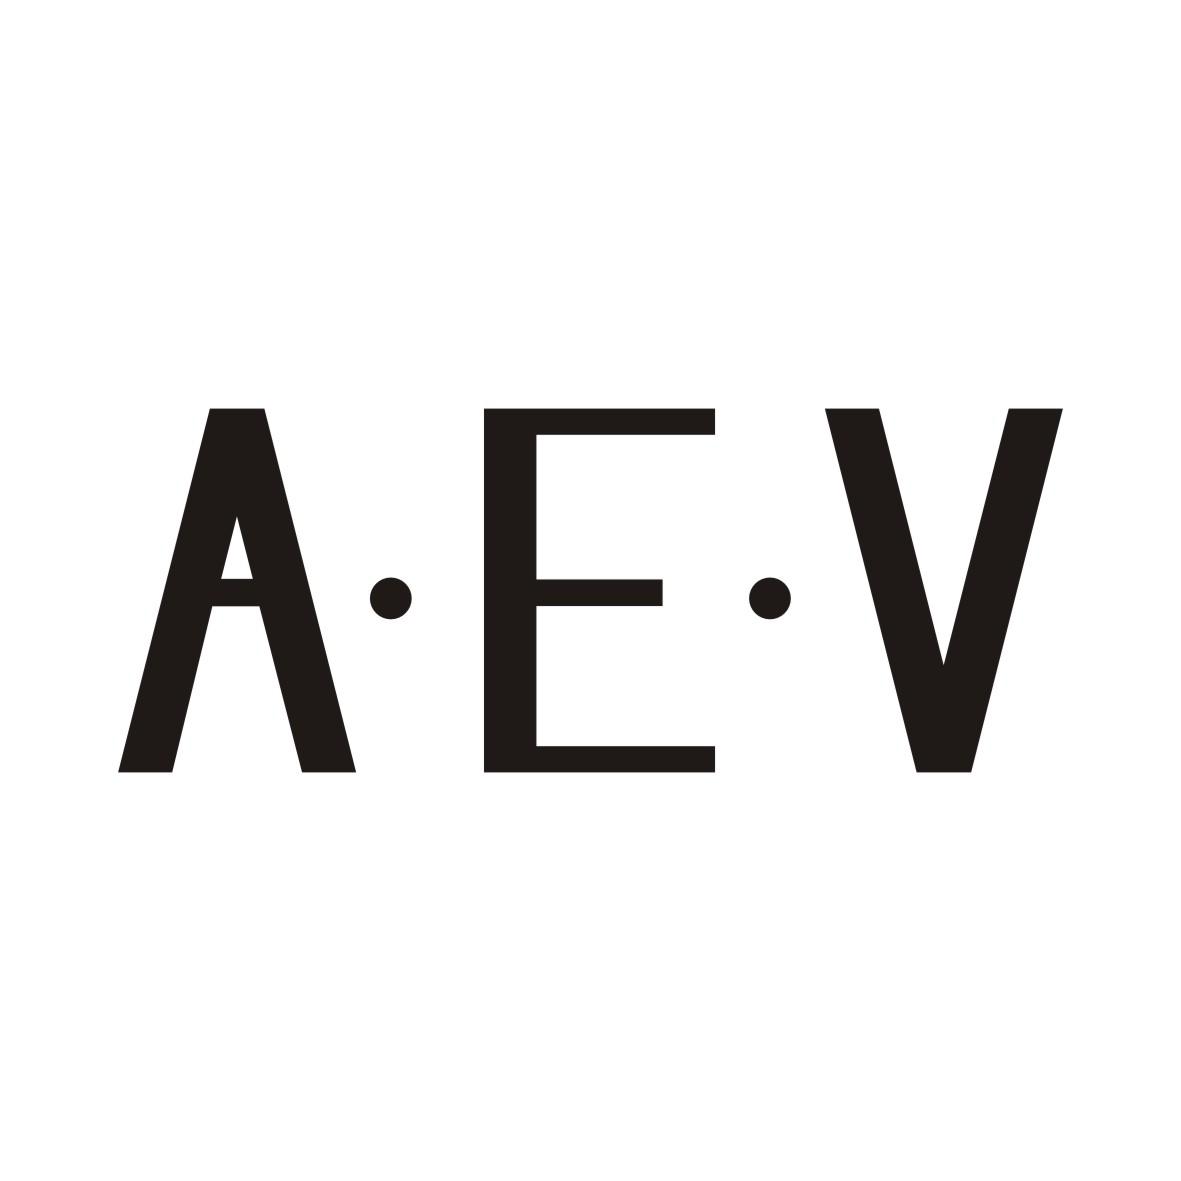 A·E·V